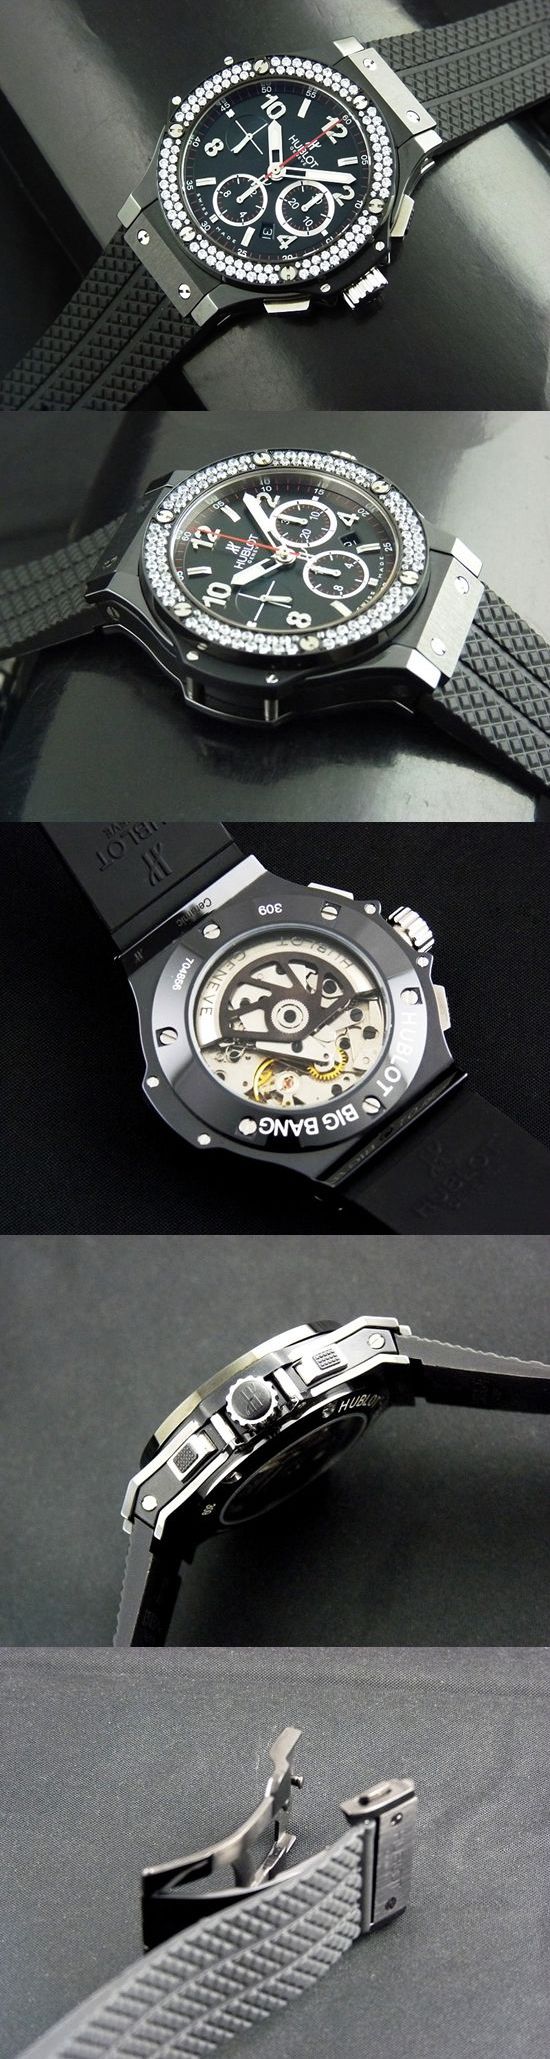 おしゃれなブランド時計がウブロ-ビッグバン-HUBLOT-301-CV-130-RX-110-114-ba-男性用を提供します.